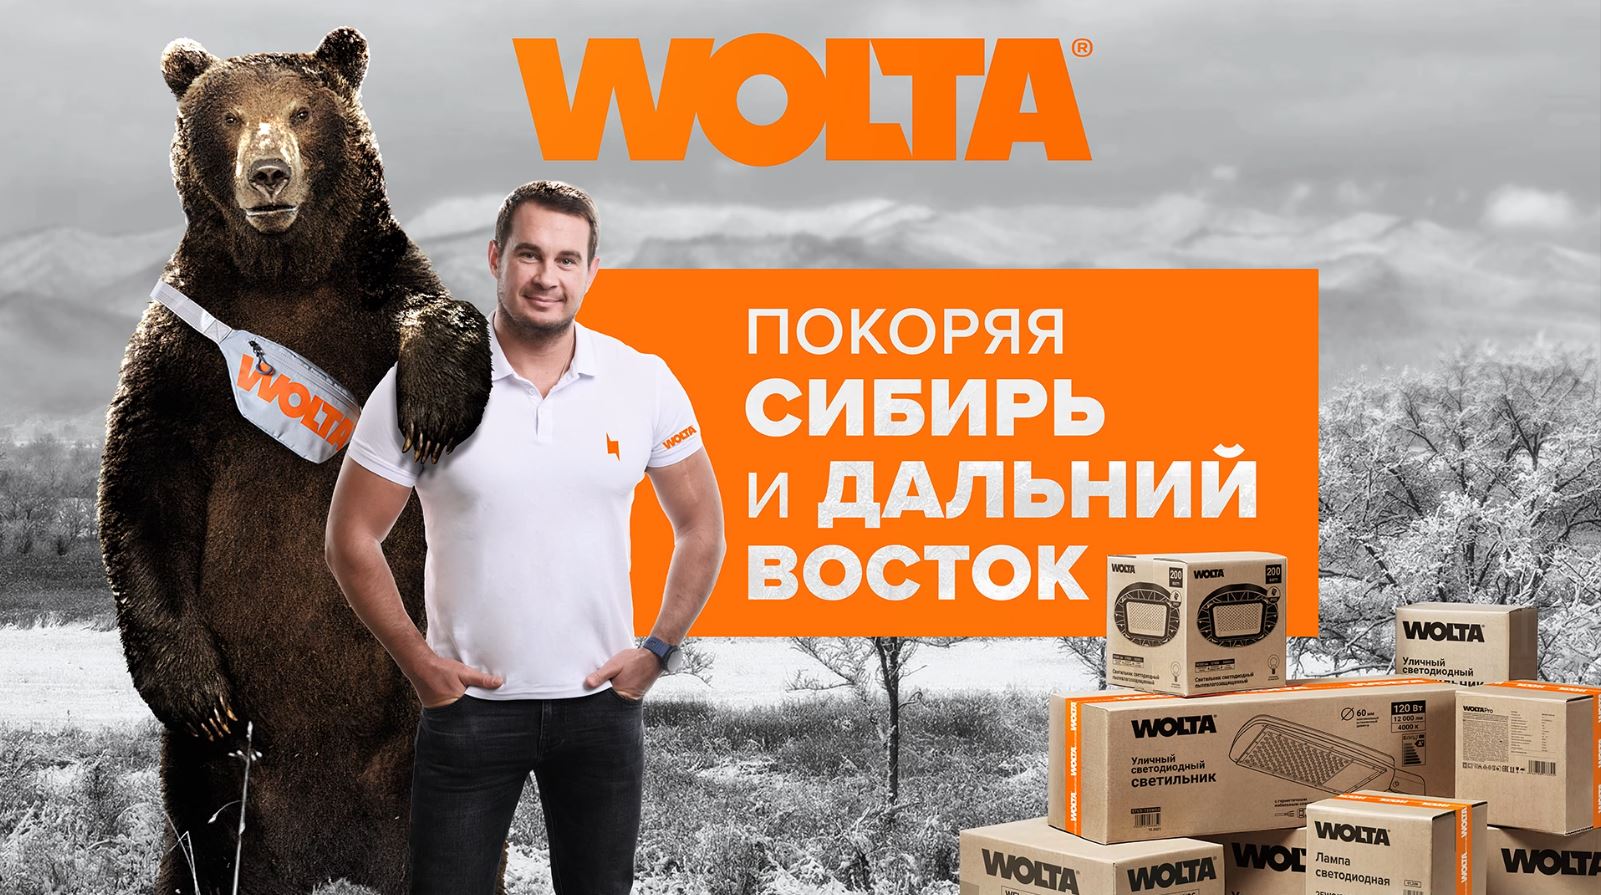 Как продают светильники WOLTA® в Сибири?